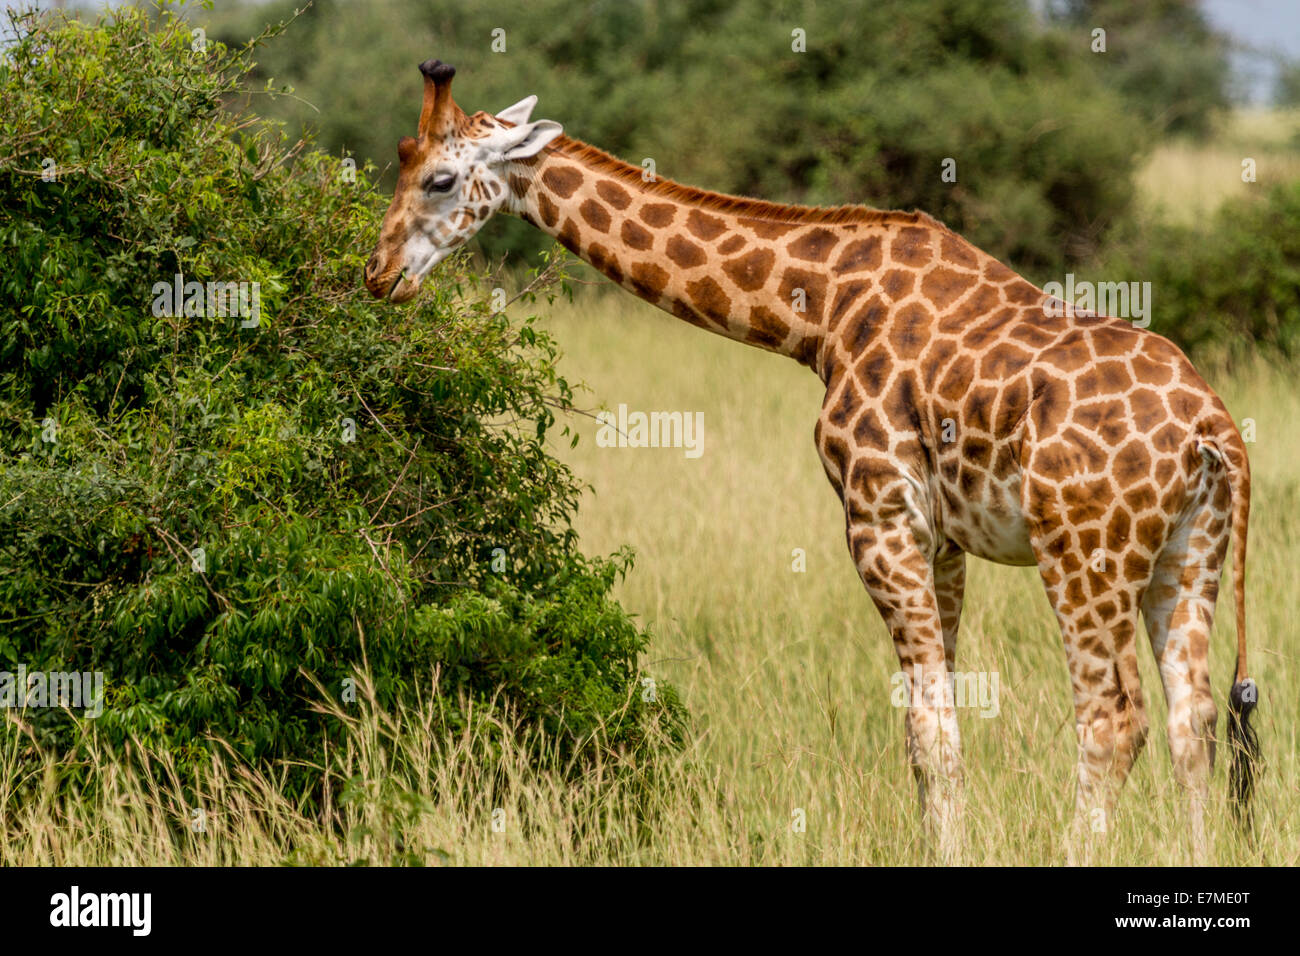 La girafe de Rothschild est l'une des plus menacées de sous-espèces de girafe. c'est aussi connu sous le nom de l'Ouganda ou girafe baringo Banque D'Images